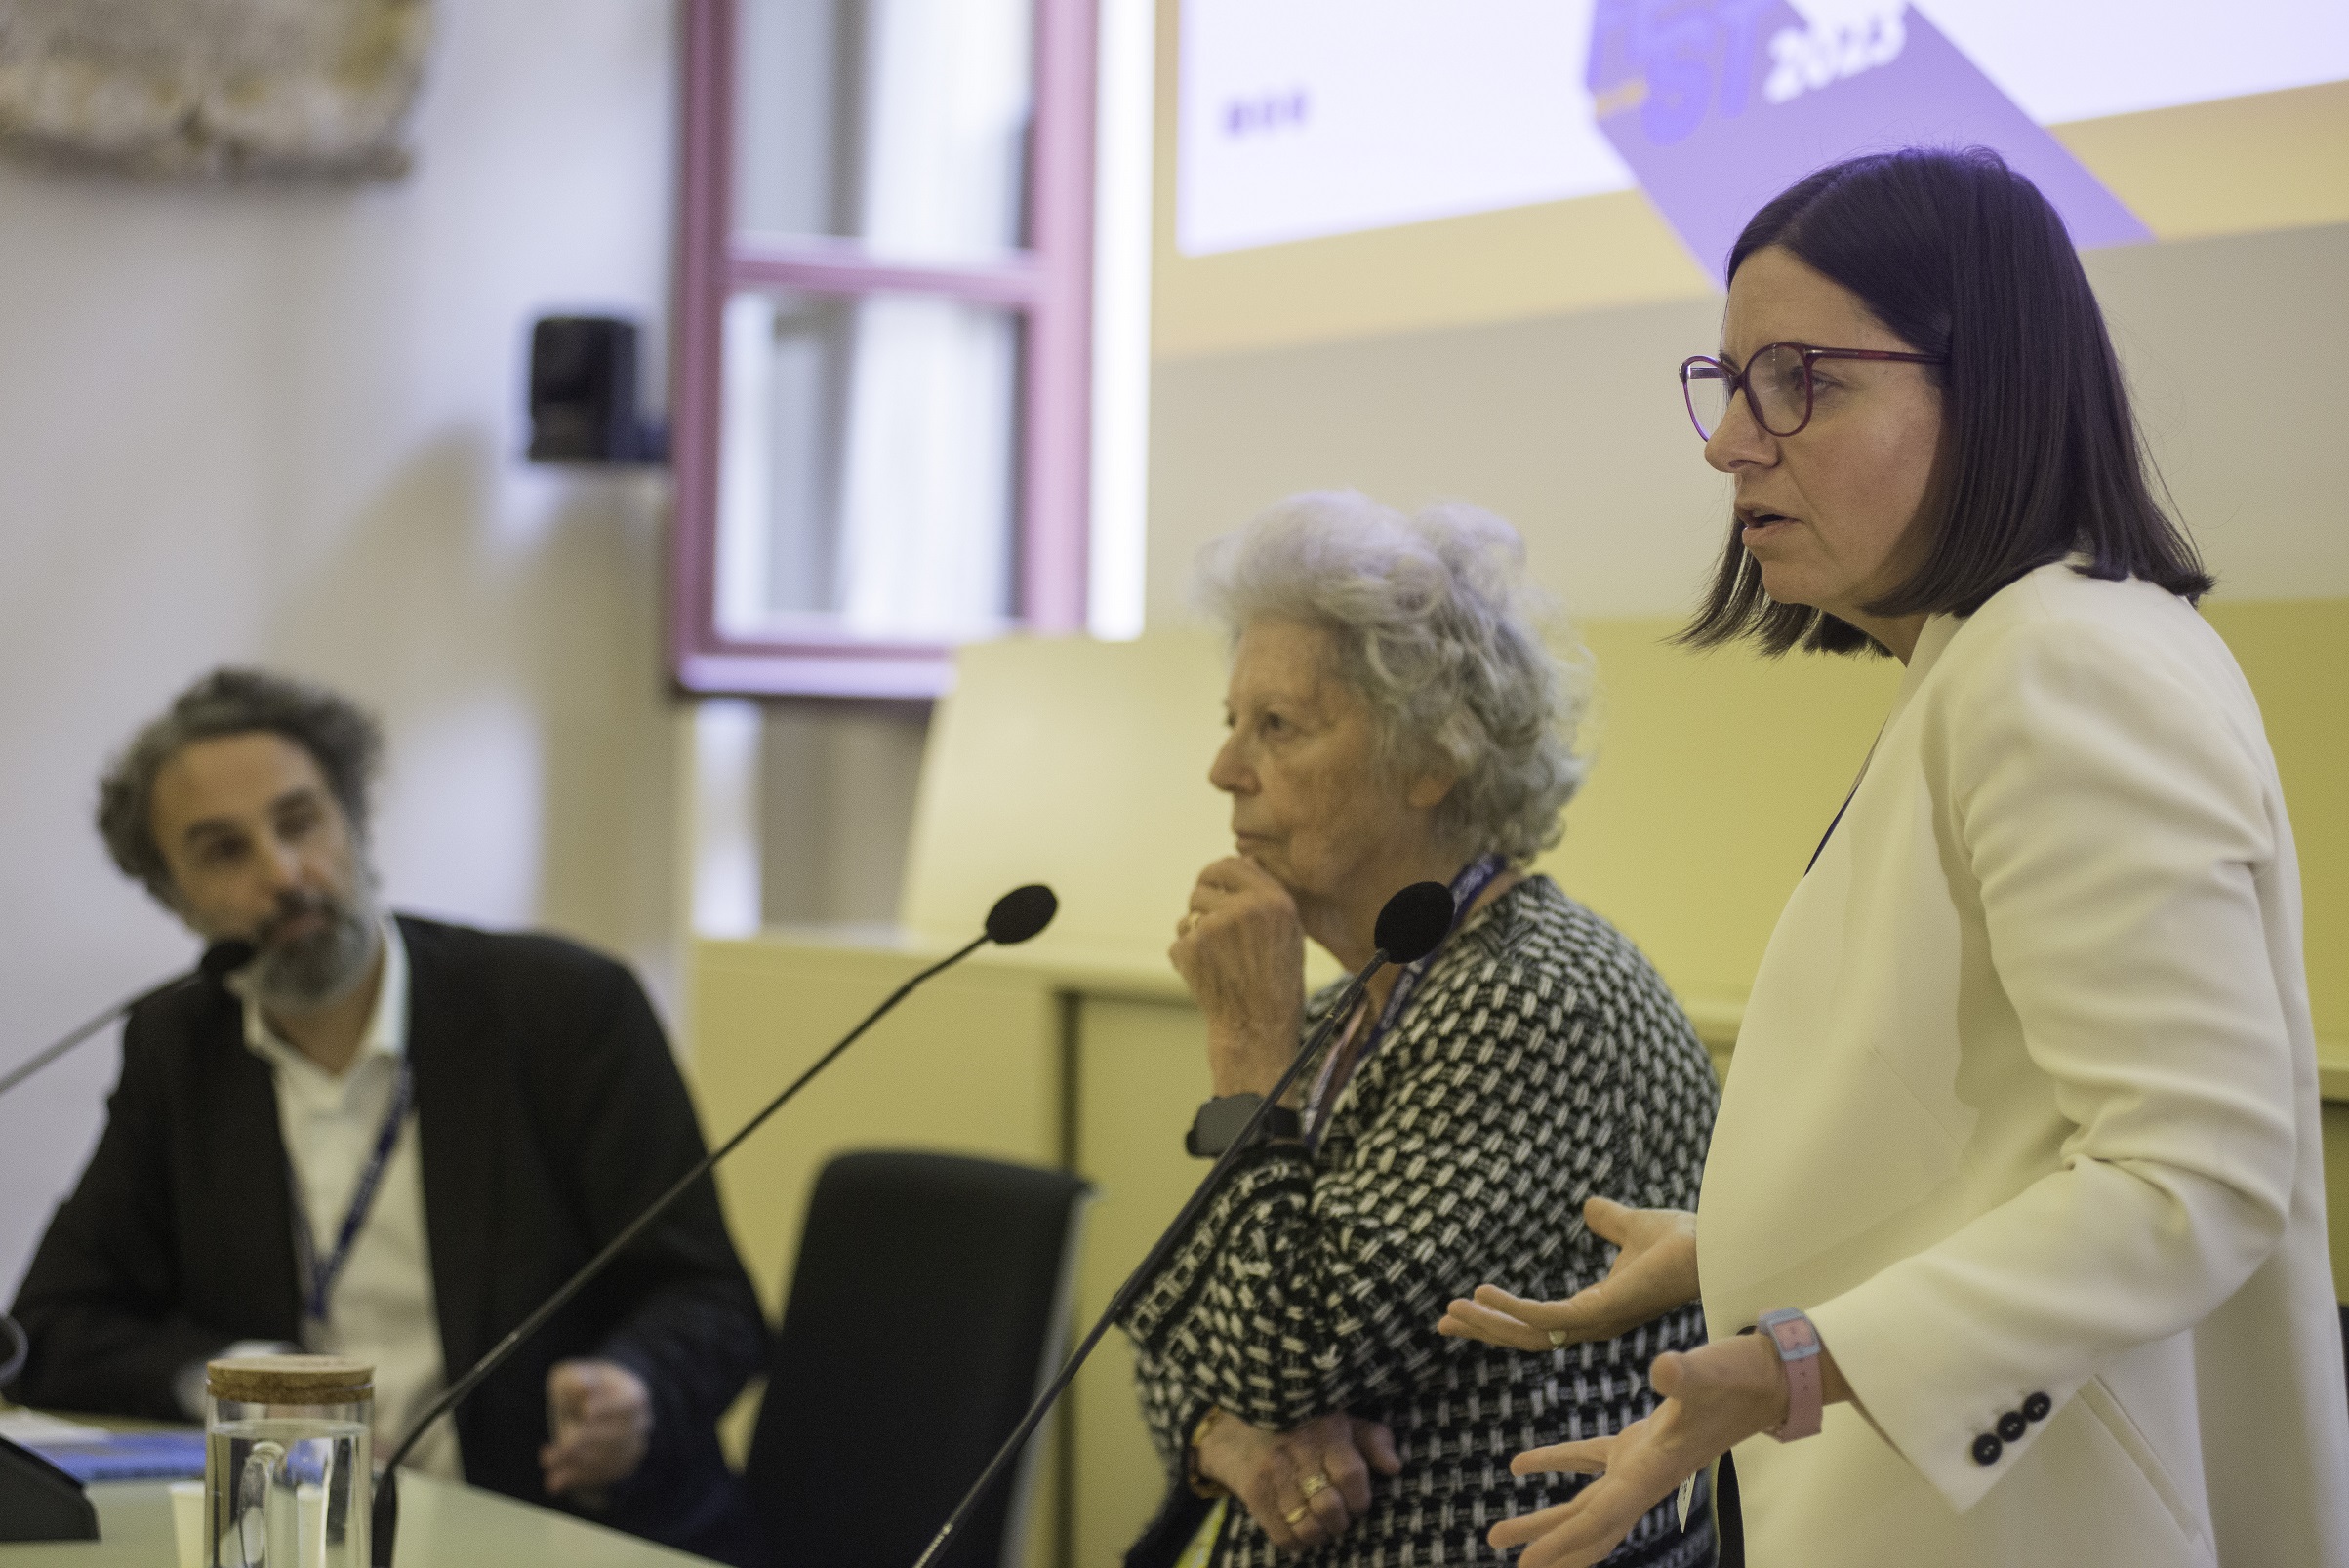 Amalia Ercoli Finzi ed Elvina Finzi al CICAP Fest: “La nostra cassetta degli attrezzi per le bambine che devono farsi spazio nel mondo”